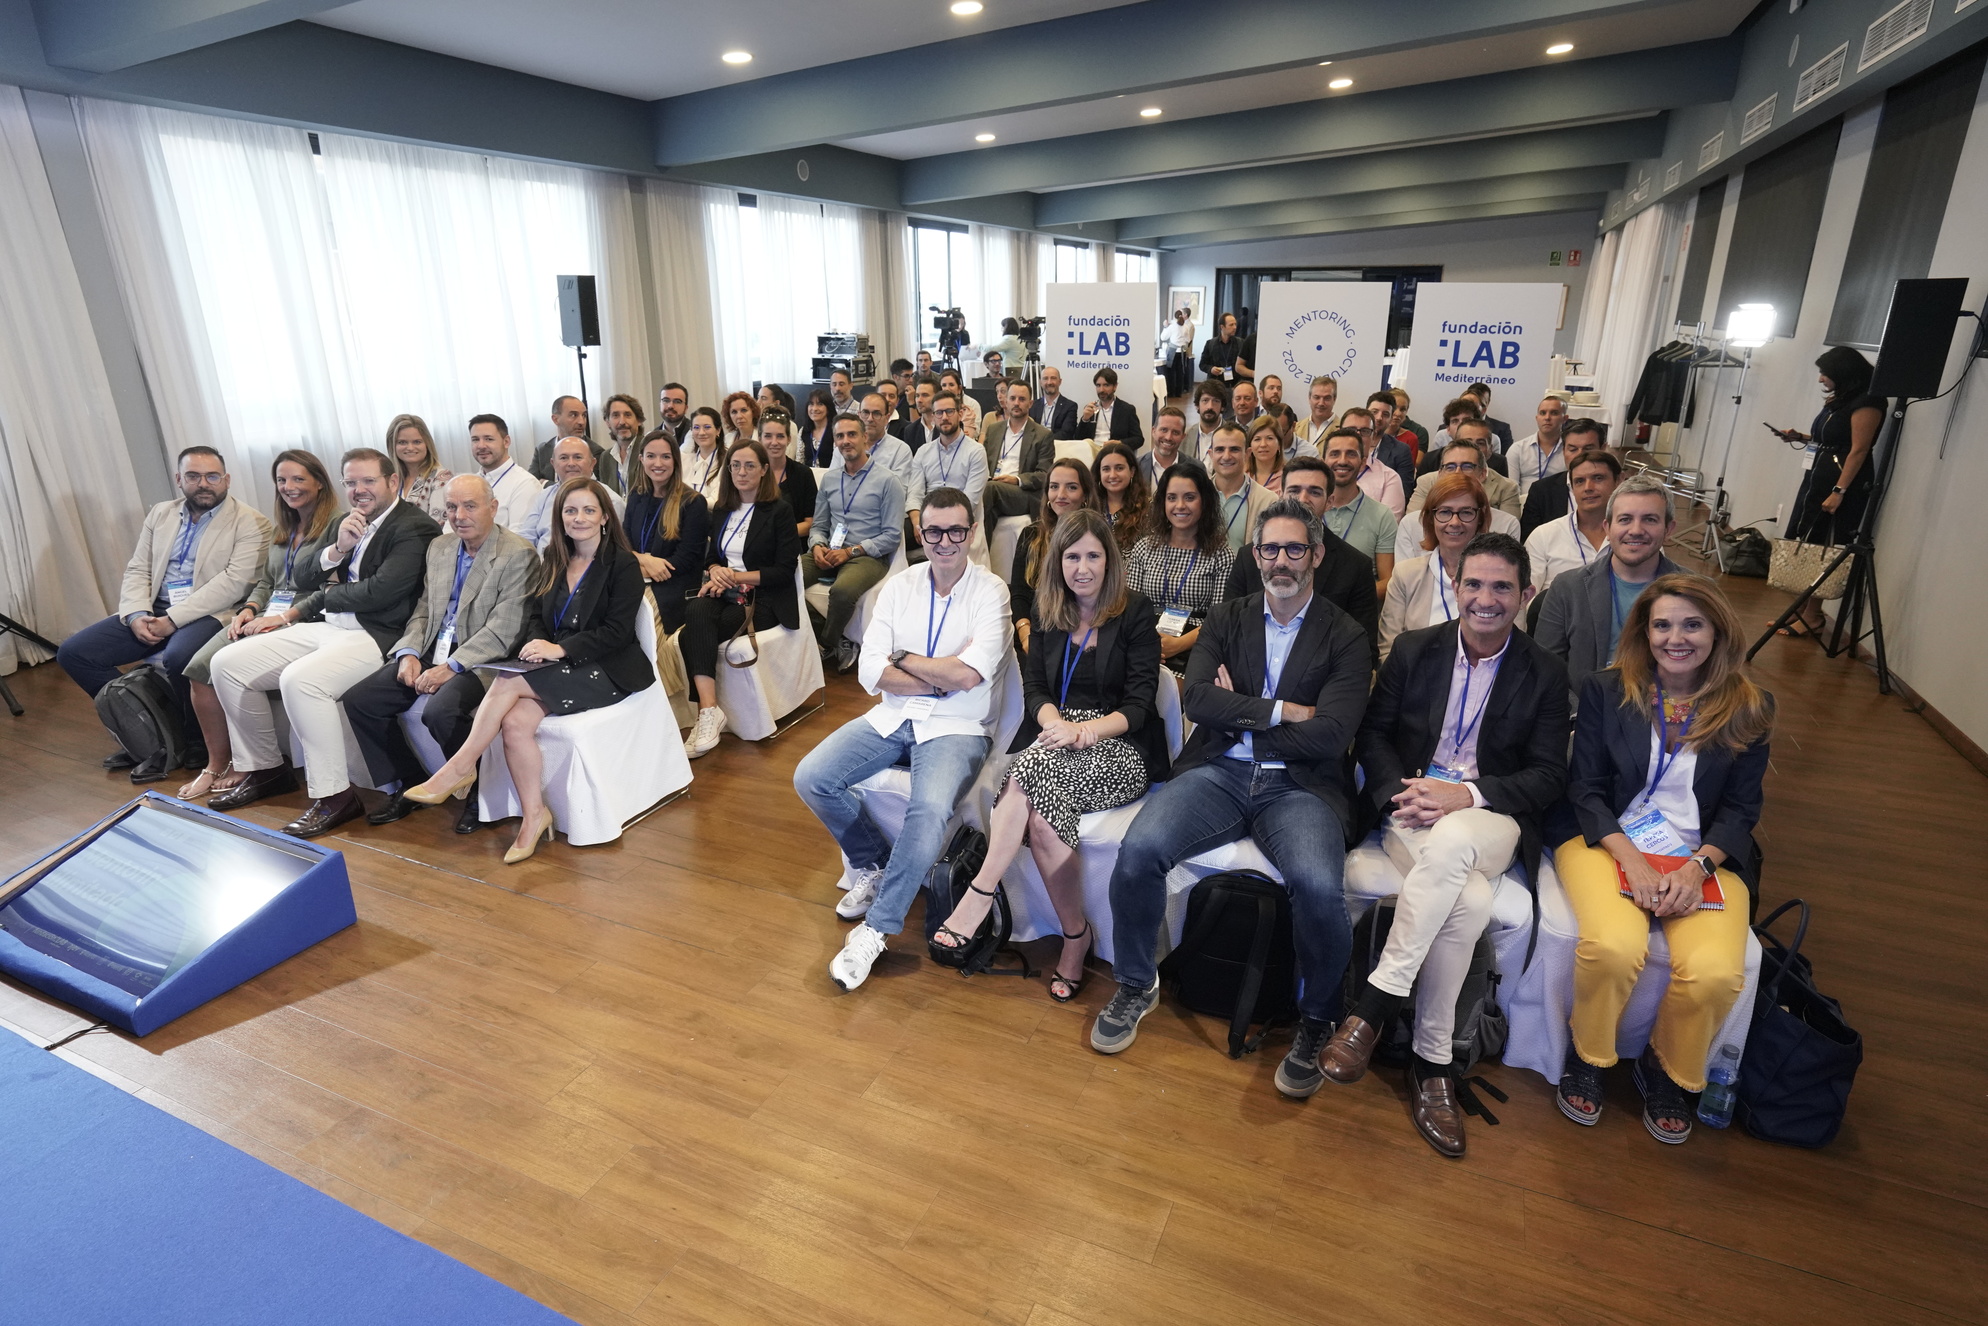 Fundación LAB Mediterráneo organiza su II Mentoring Ilimitado para ayudar a pymes a superar retos de innovación y tecnología